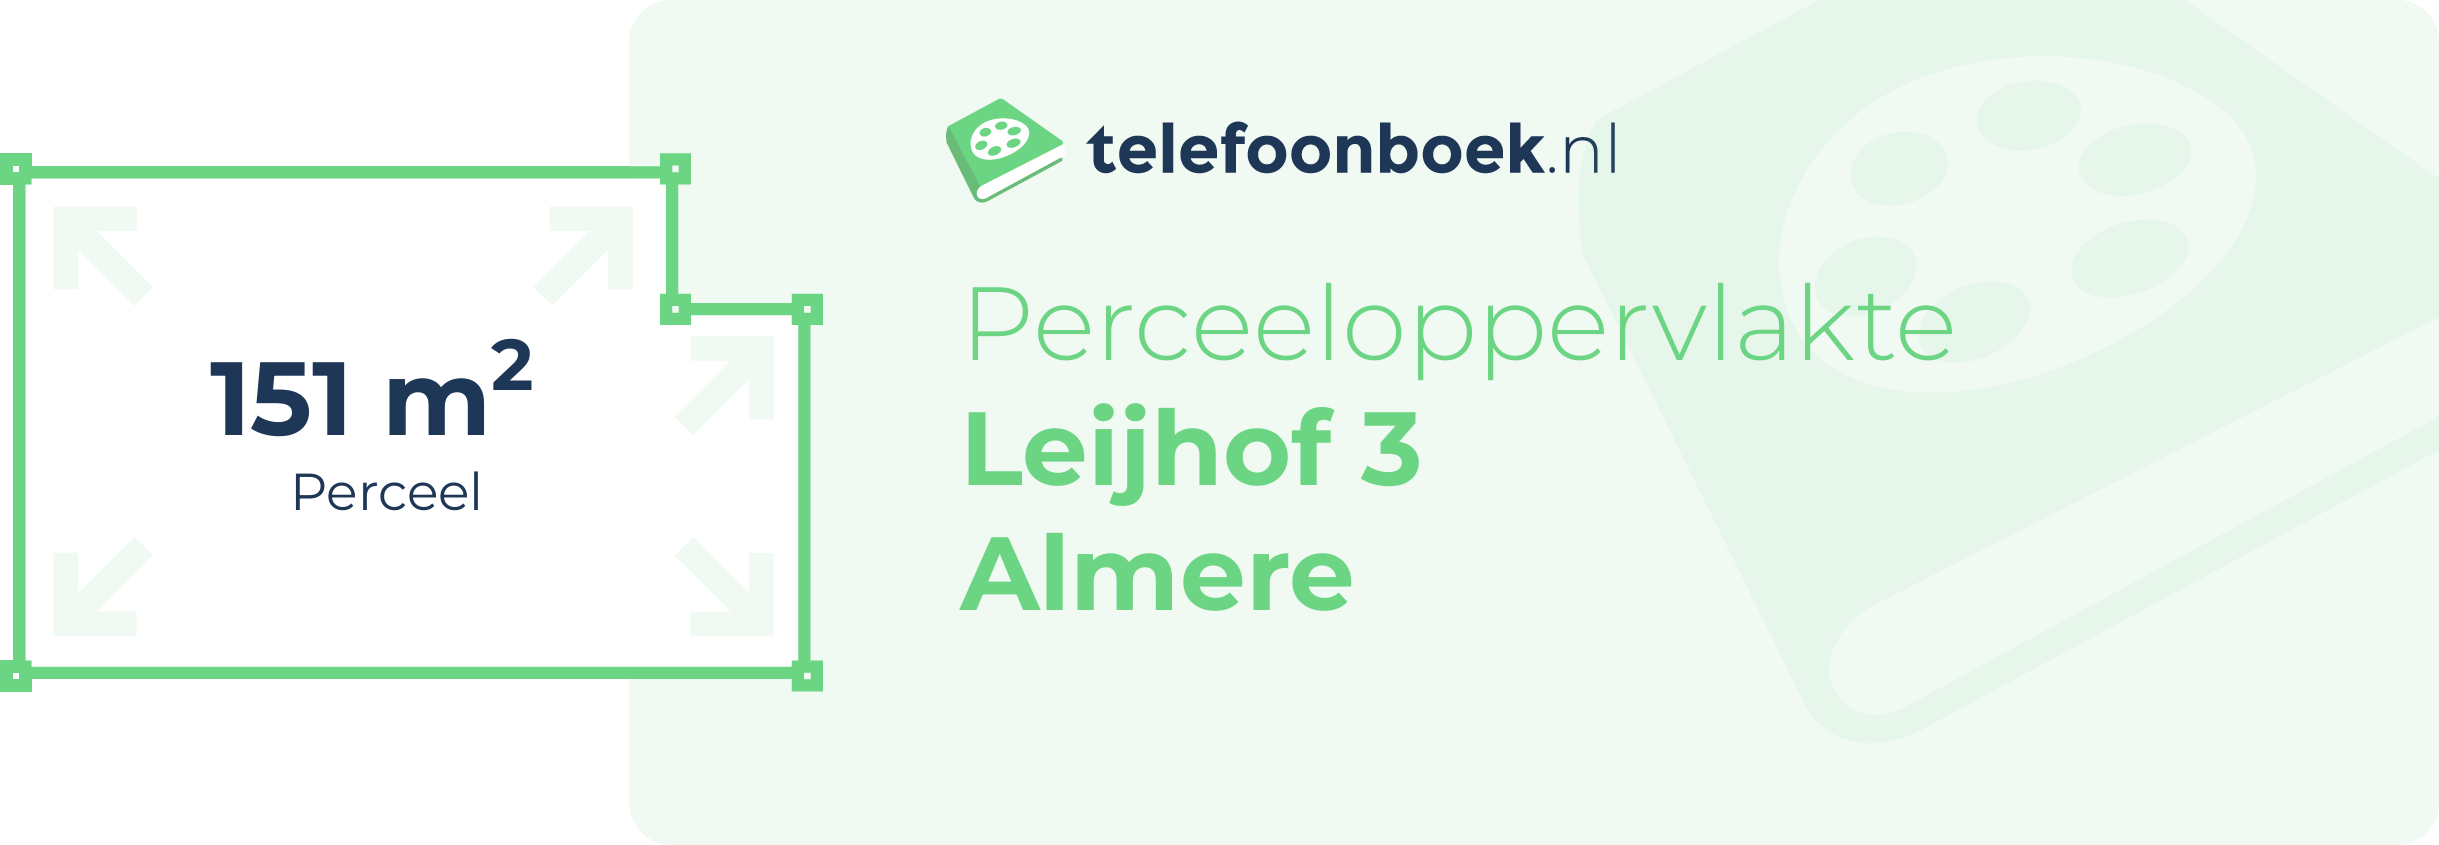 Perceeloppervlakte Leijhof 3 Almere